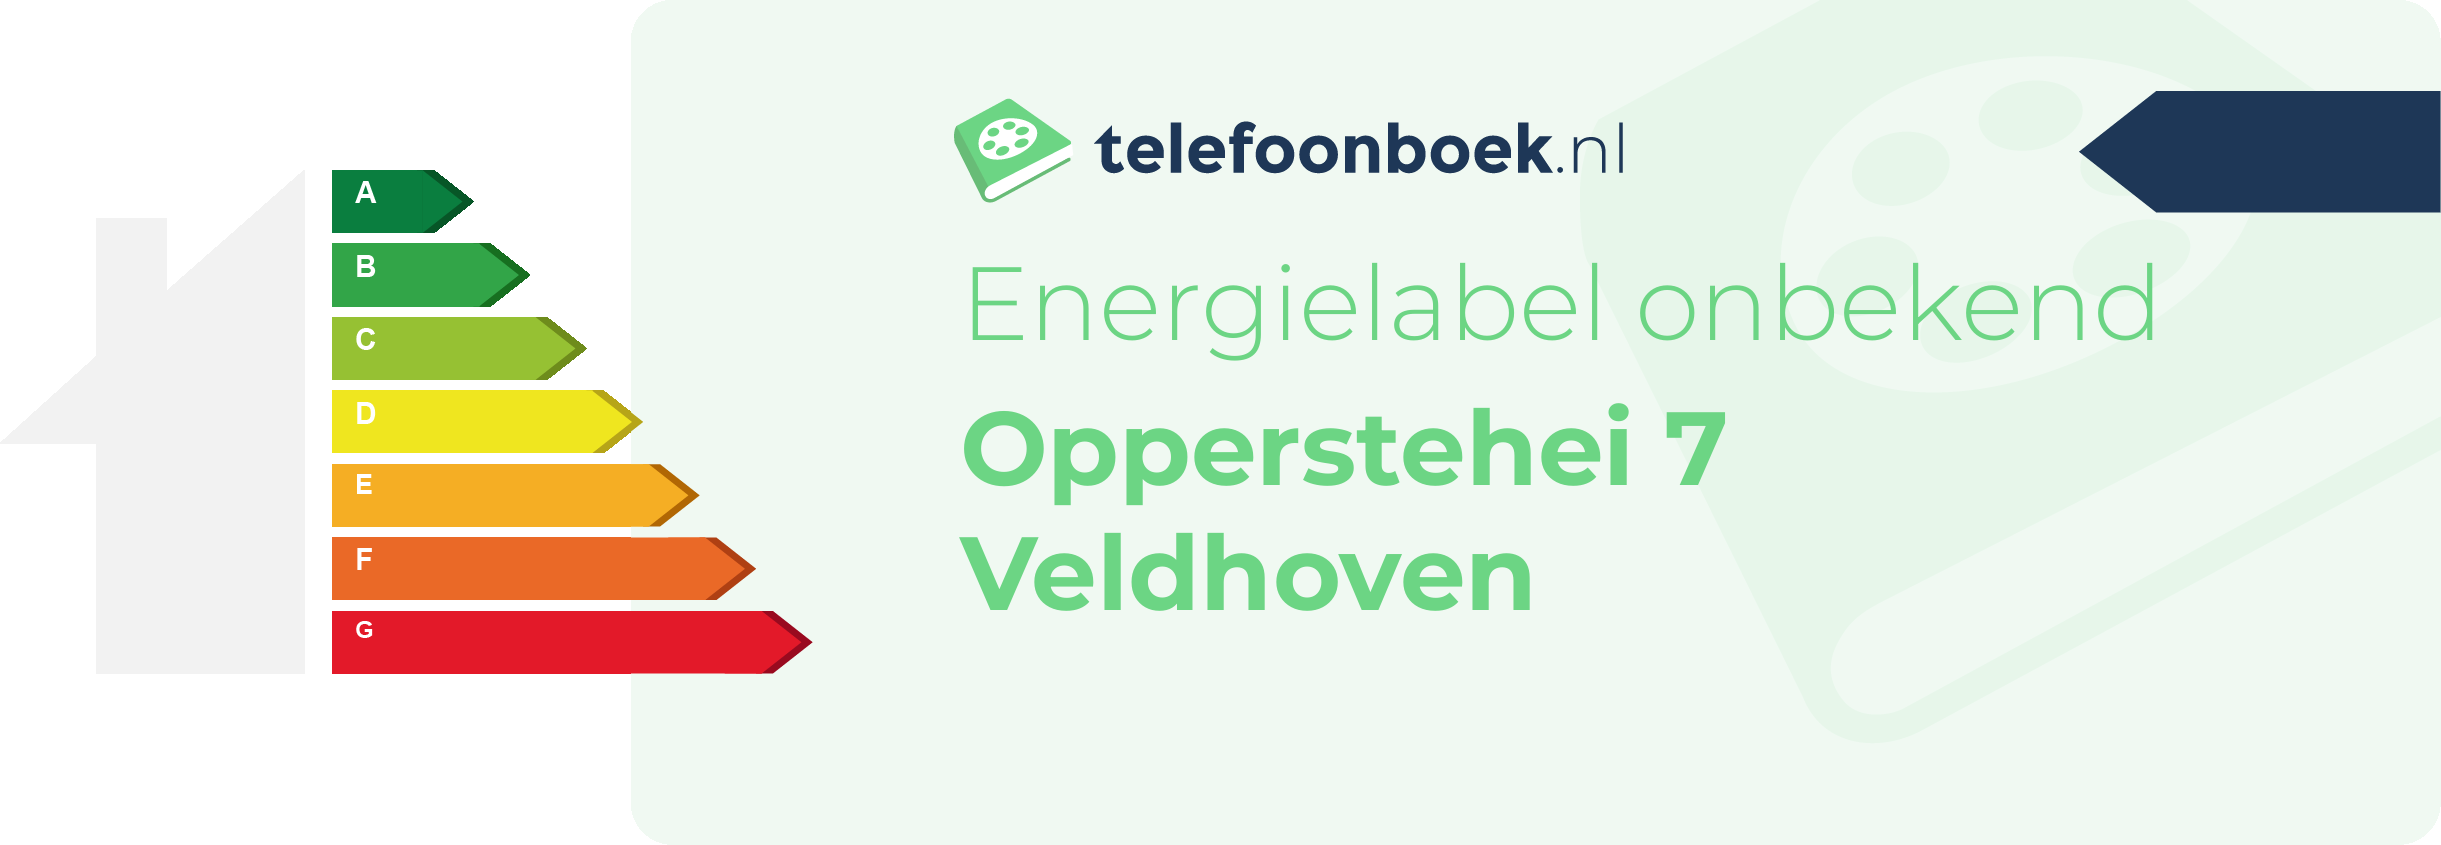 Energielabel Opperstehei 7 Veldhoven